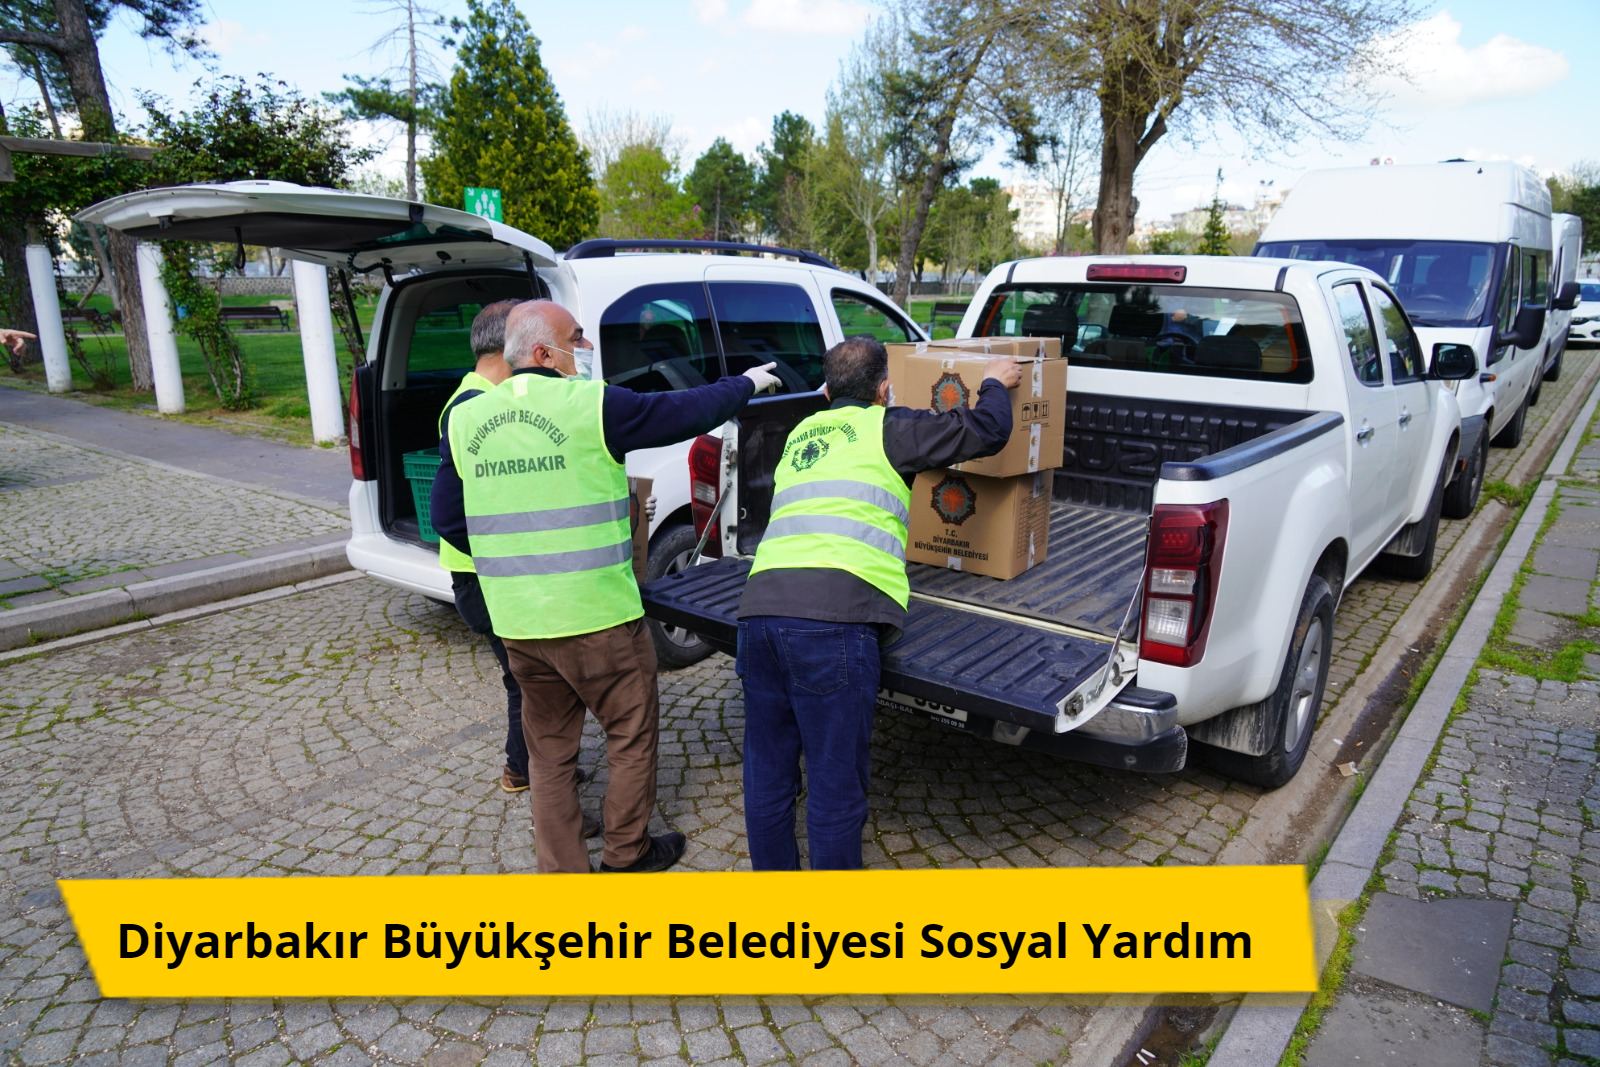 Diyarbakir Buyuksehir Belediyesi Sosyal Yardim - Diyarbakır Büyükşehir Belediyesi Sosyal Yardım Başvurusu 2022-2023